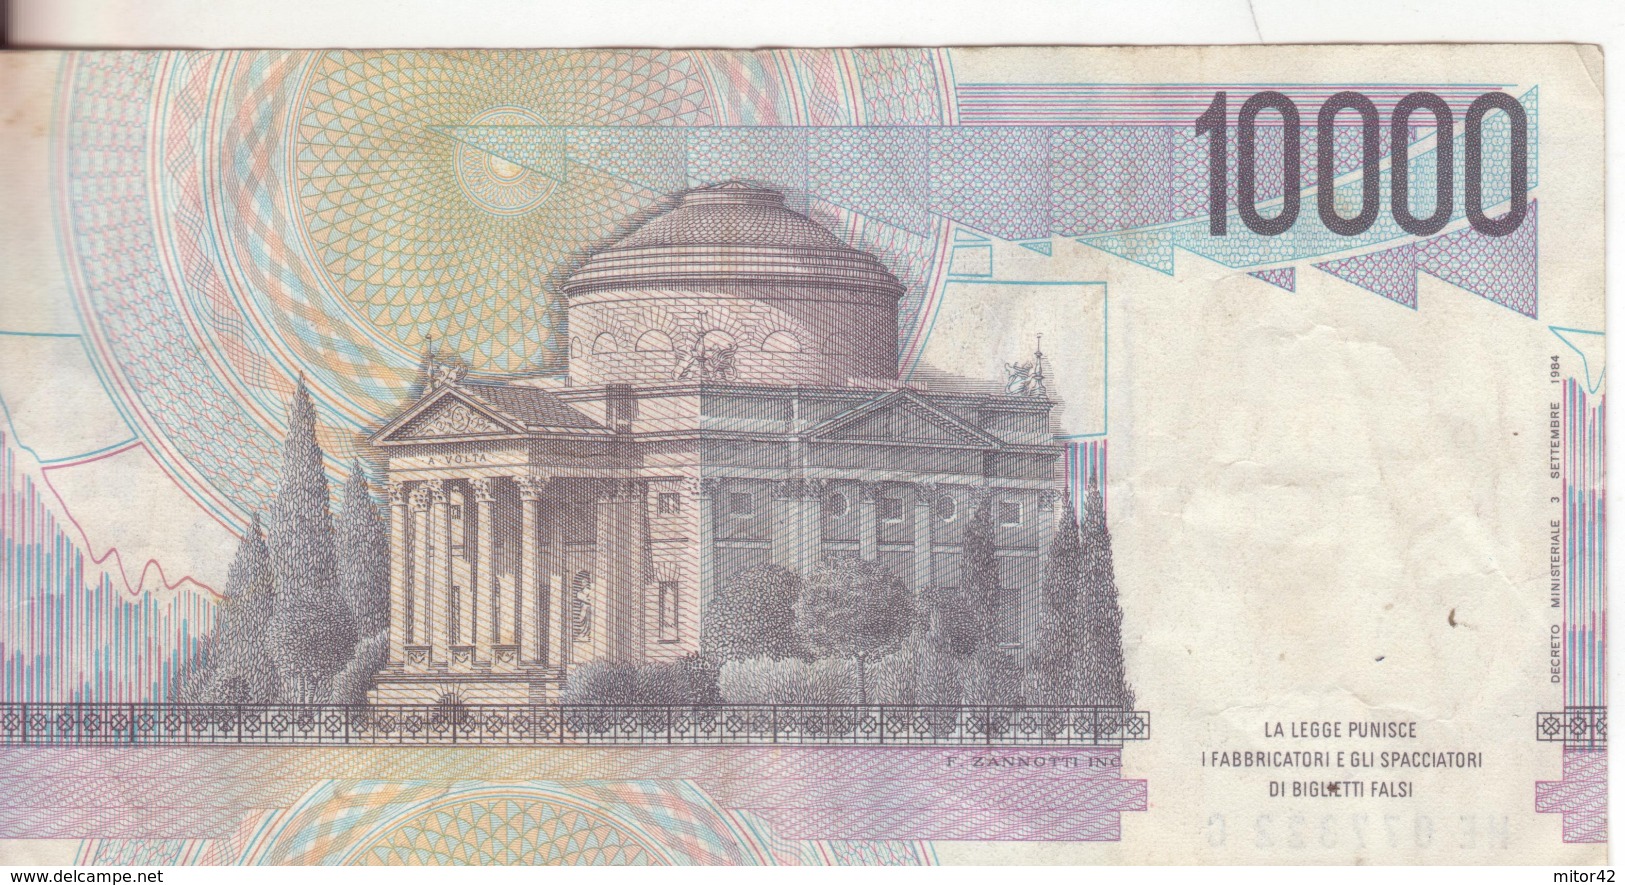 45*-Cartamoneta-Banconota  Italia Repubblica Da L.10.000 Volta-serie-HE 077322 C-Condizione:Circolata - 10.000 Lire